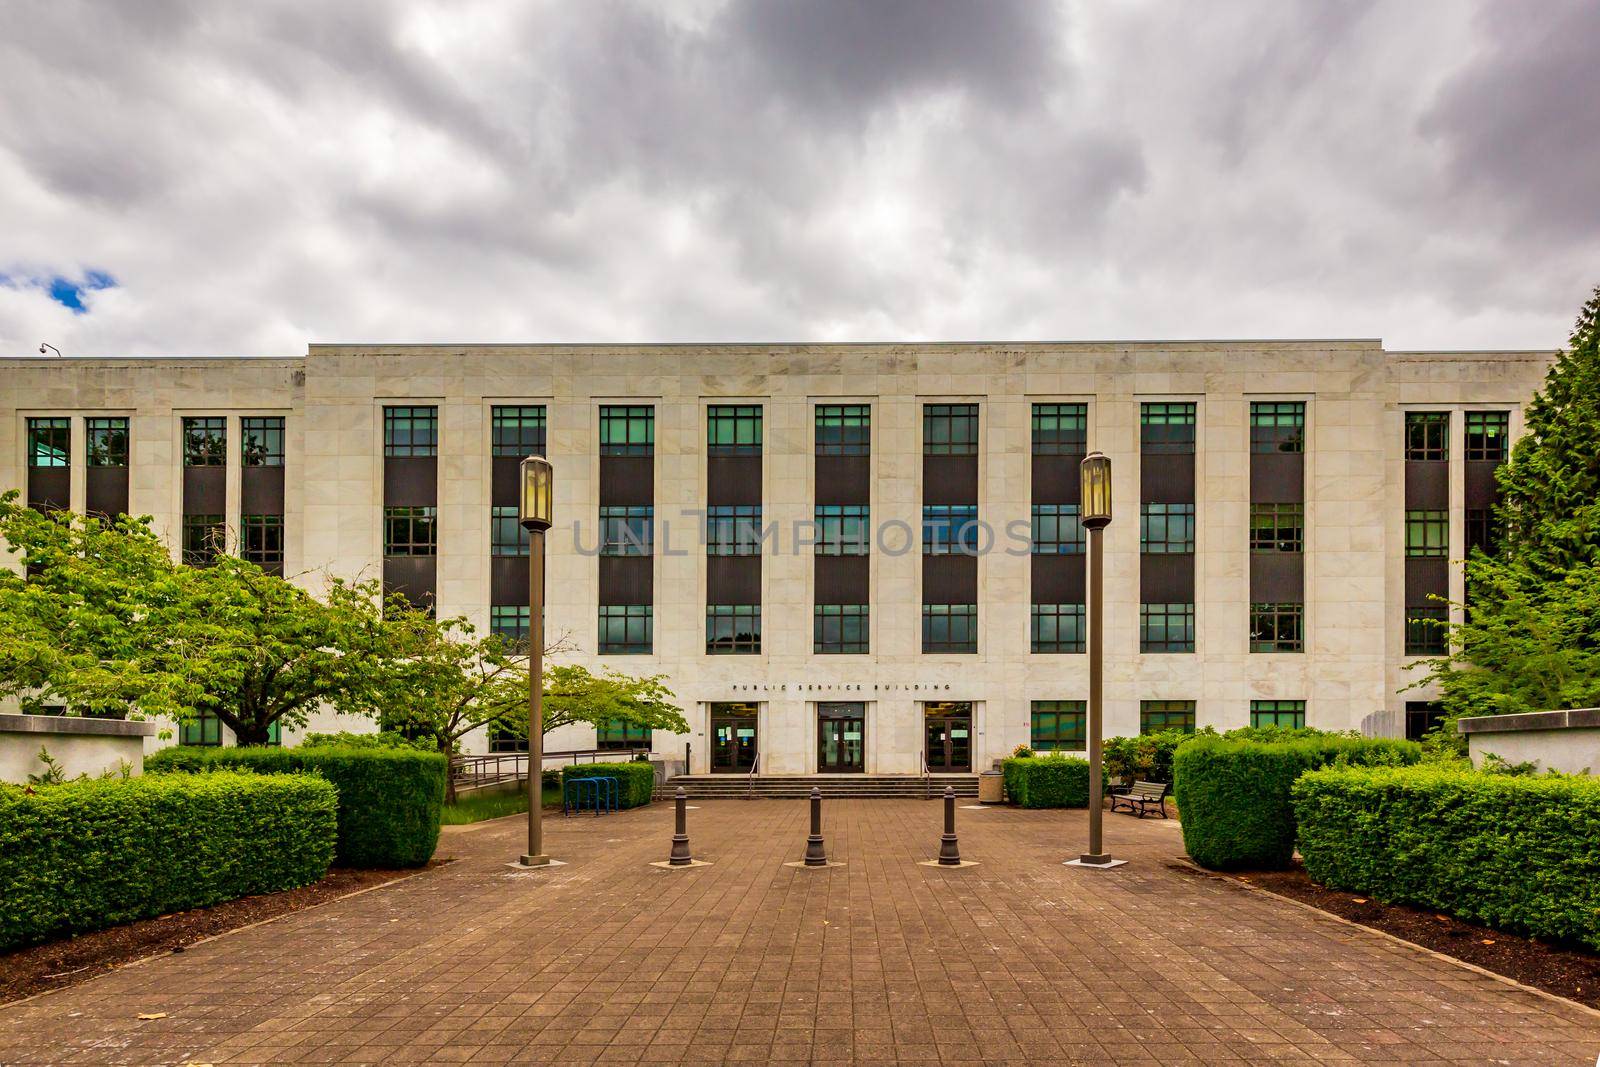 Oregon Public Service Building at Oregon Capitol Mall, Salem